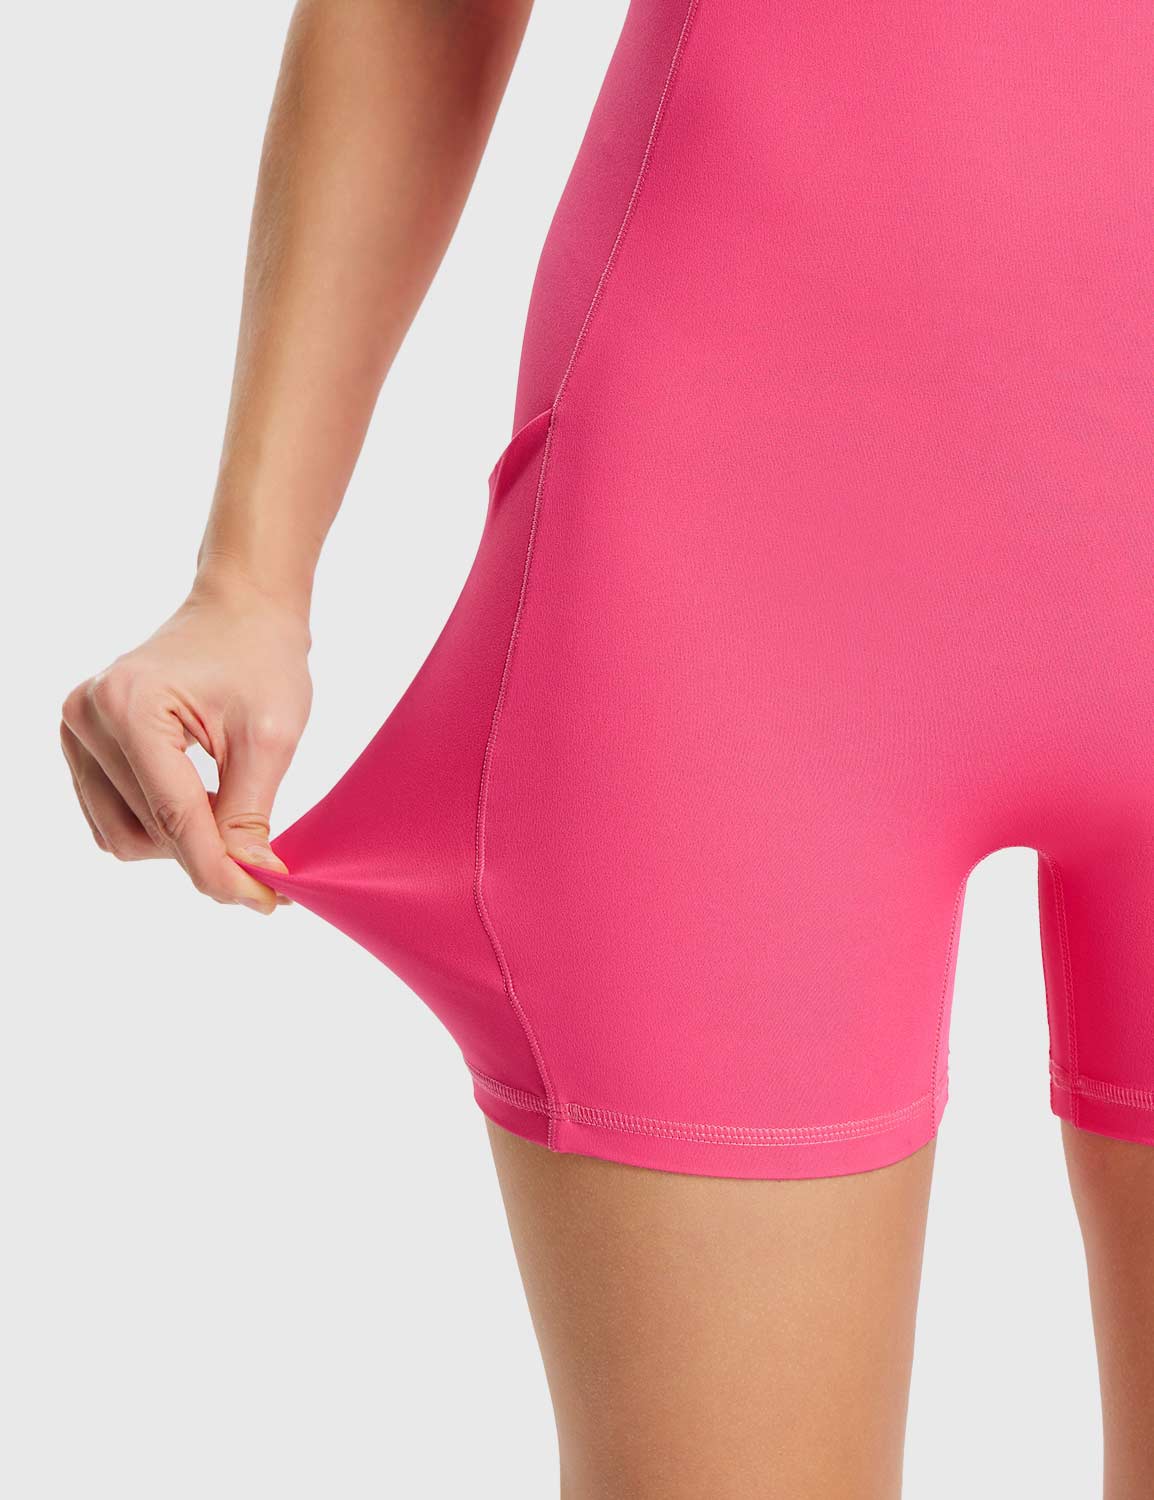 Baleaf Women's Stretchy Soft Square Neck Bodysuit Hot Pink Details